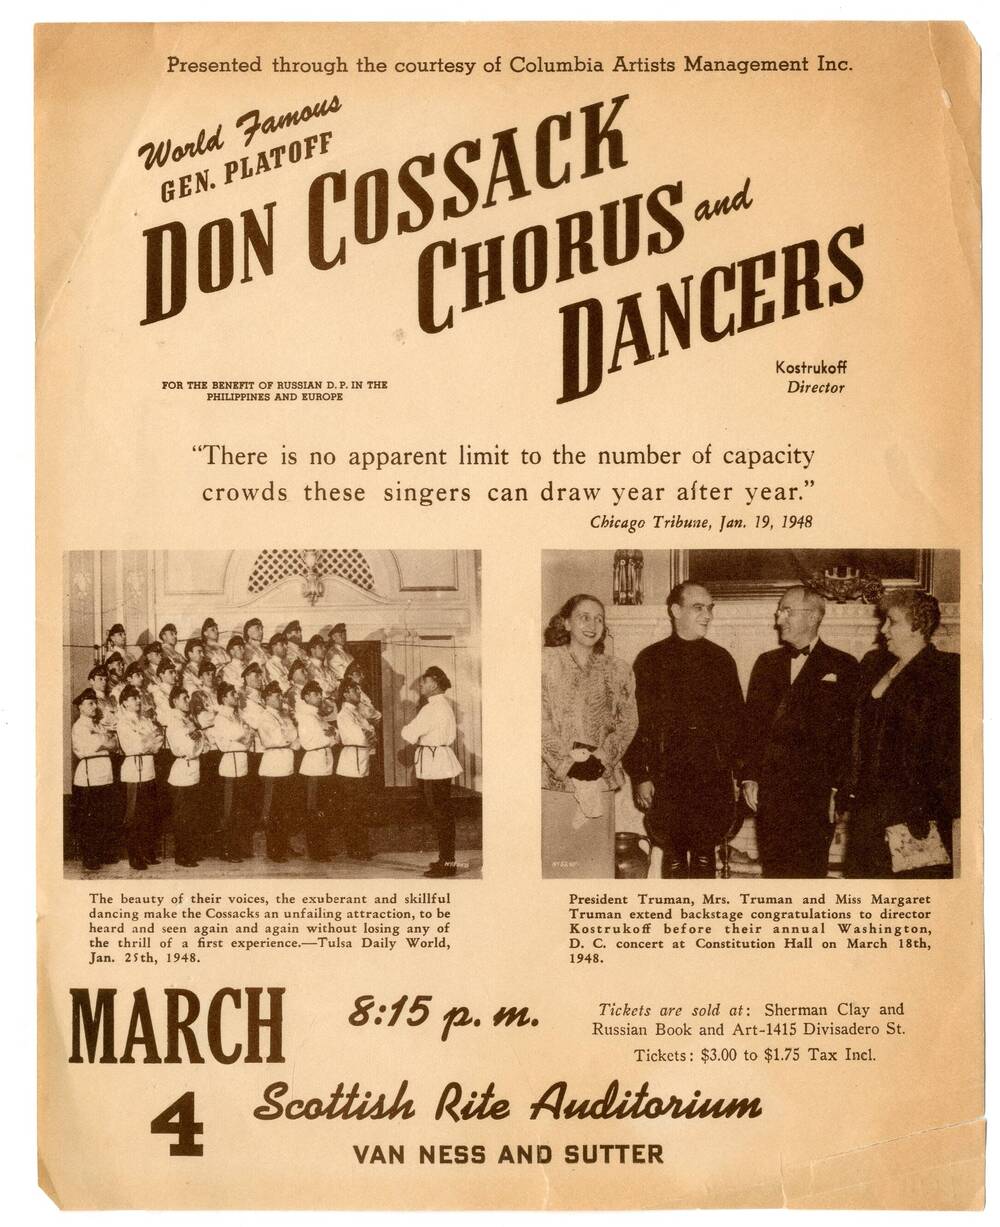 Реклама концерта хора донских казаков имени М.И. Платова Gen. Platoff. Don Cossack Chorus and dancers в США.